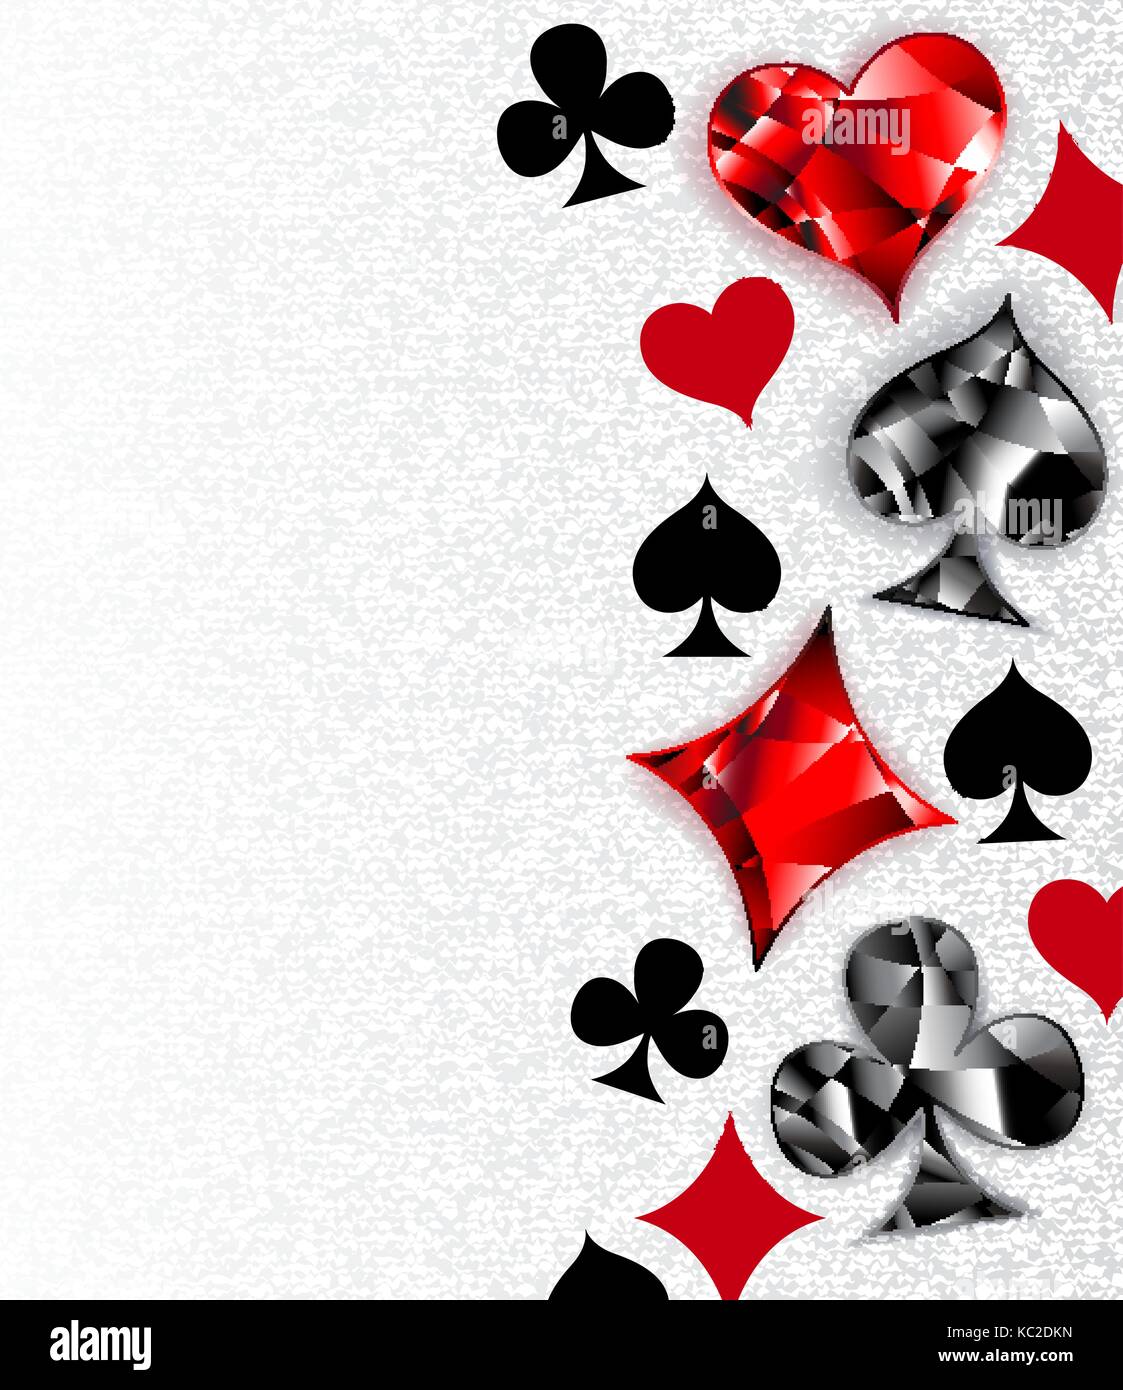 Grau, strukturierten Hintergrund mit polygonalen Spielkarten Symbole. Symbole der Karten, Herz, Karo, Pik und Club. Stock Vektor